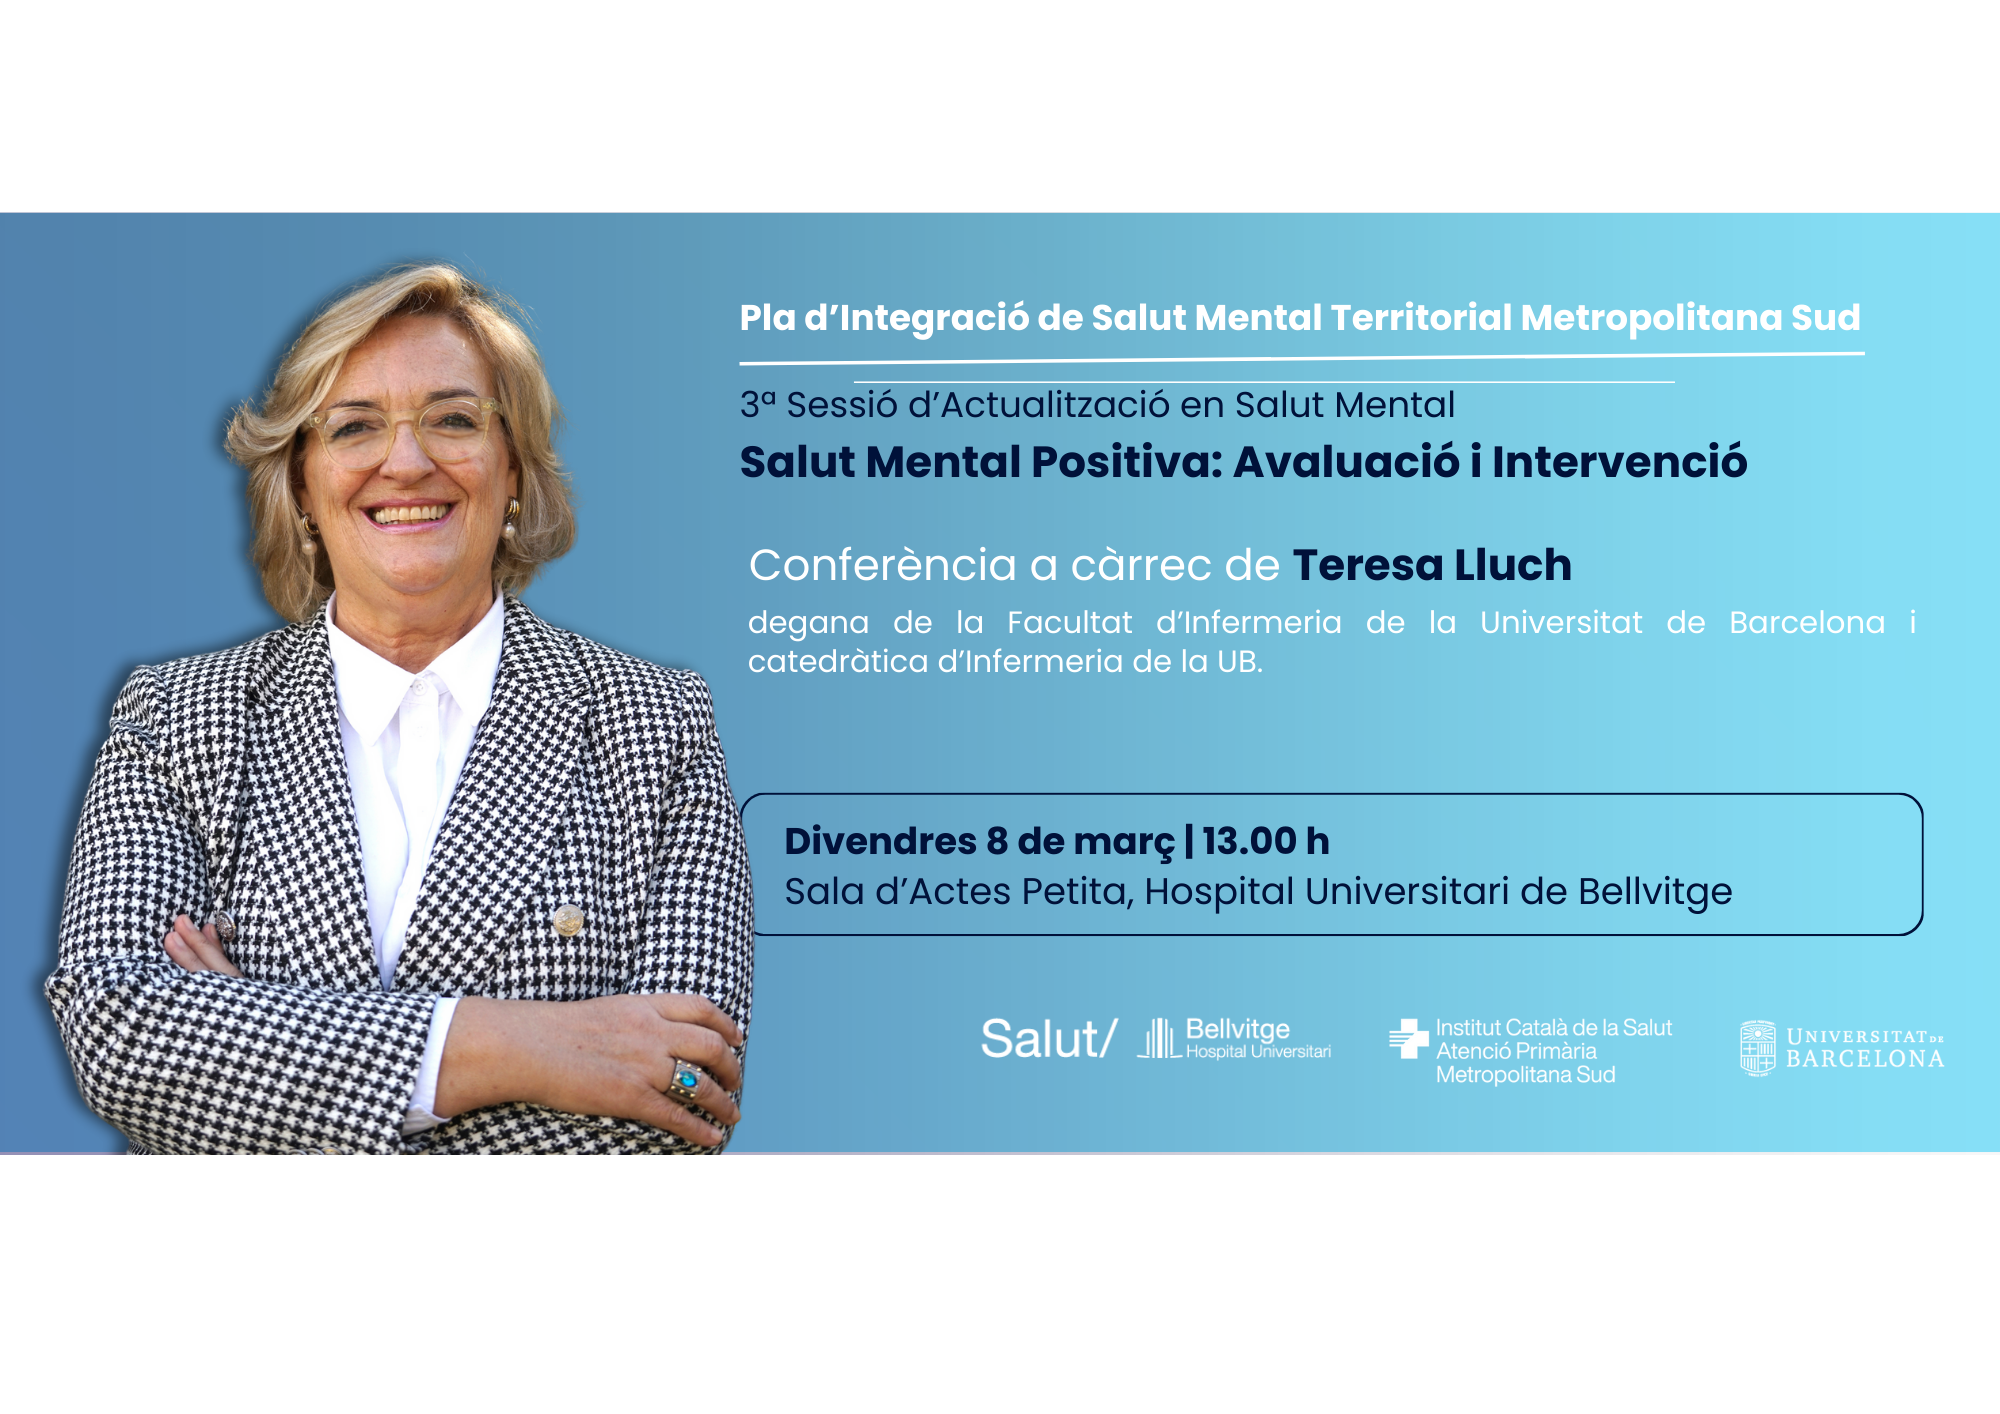 El pròxim 8 de març se celebrarà la 3a Sessió d'Actualització en Salut Mental